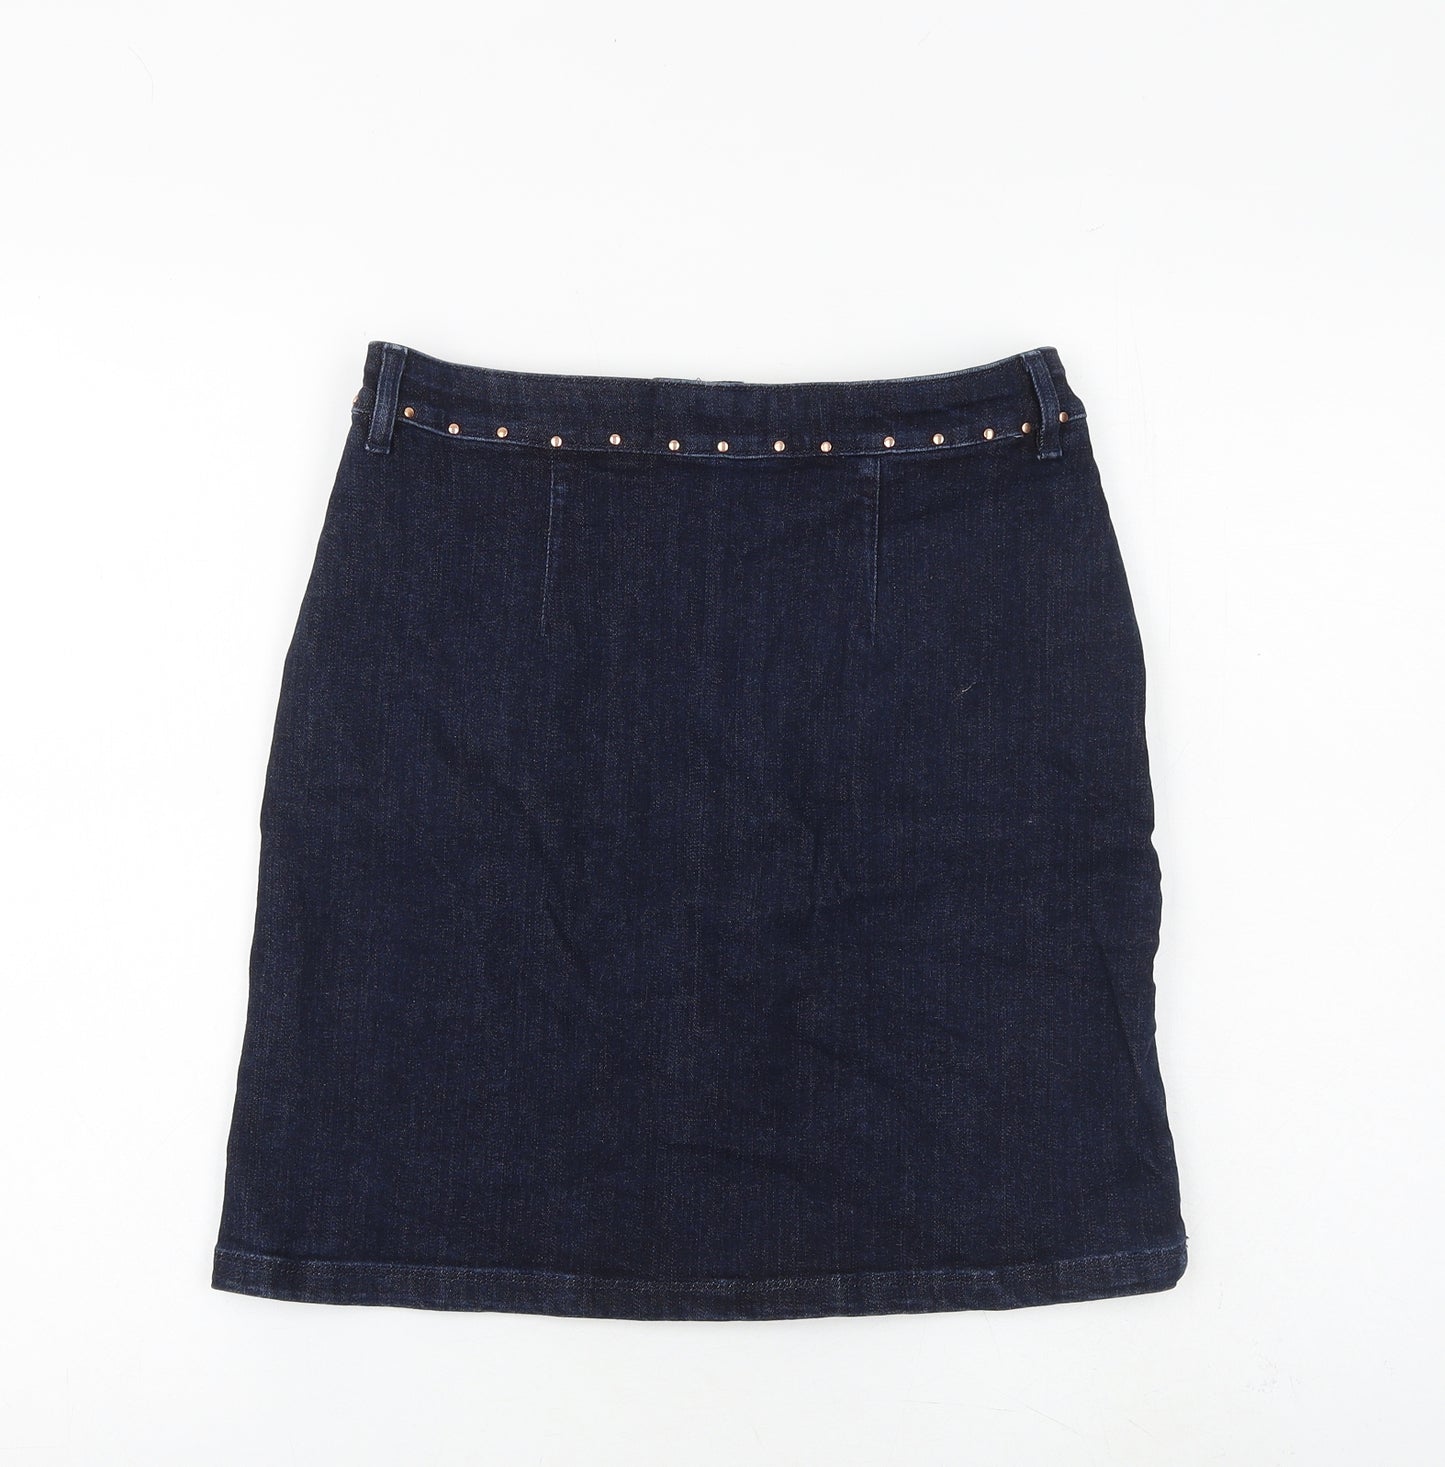 F&F Womens Blue Cotton A-Line Skirt Size 8 Zip